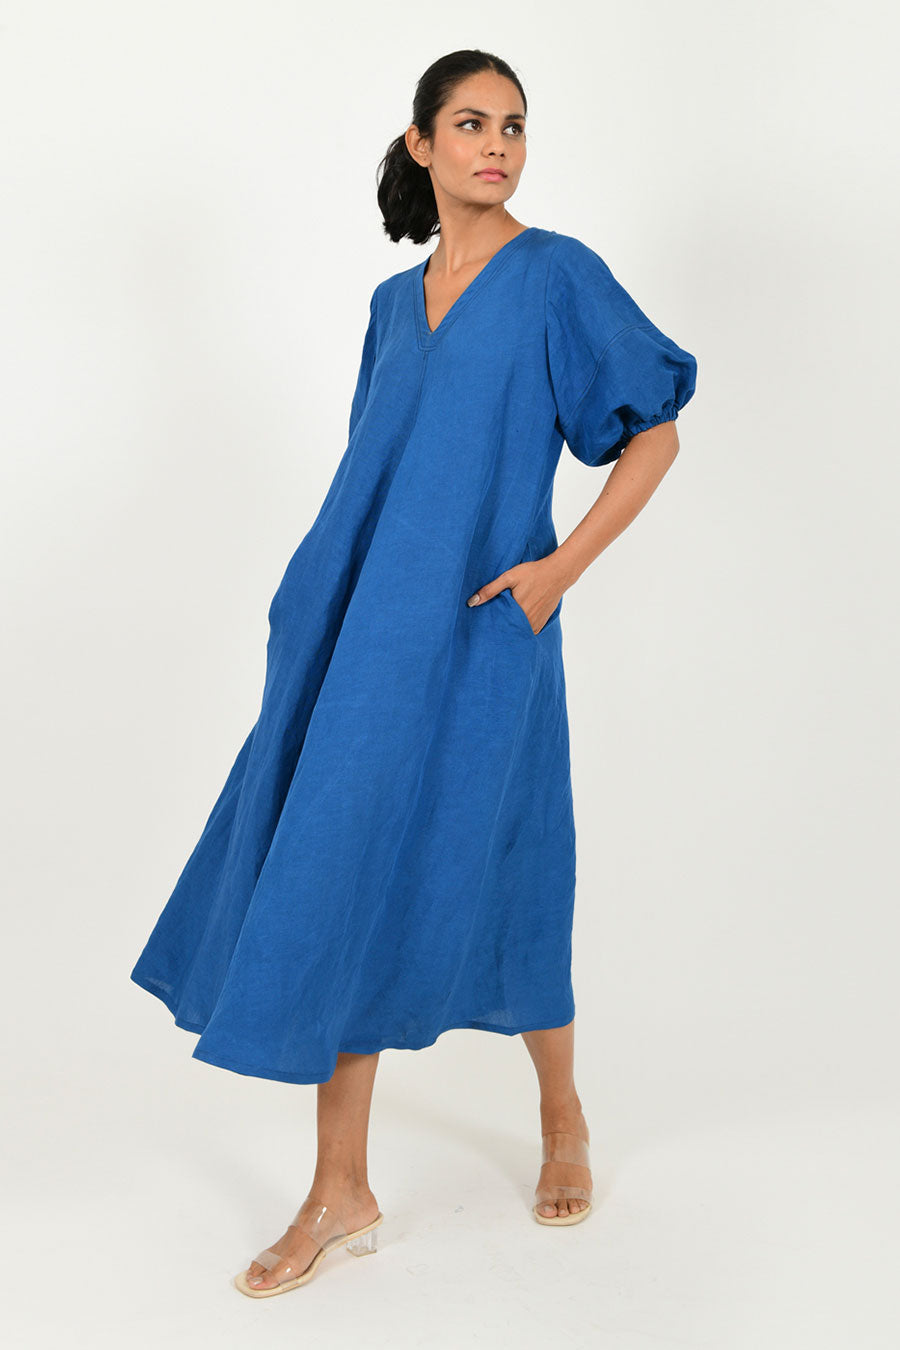 Classic Blue Linen Puff Sleeves Dress